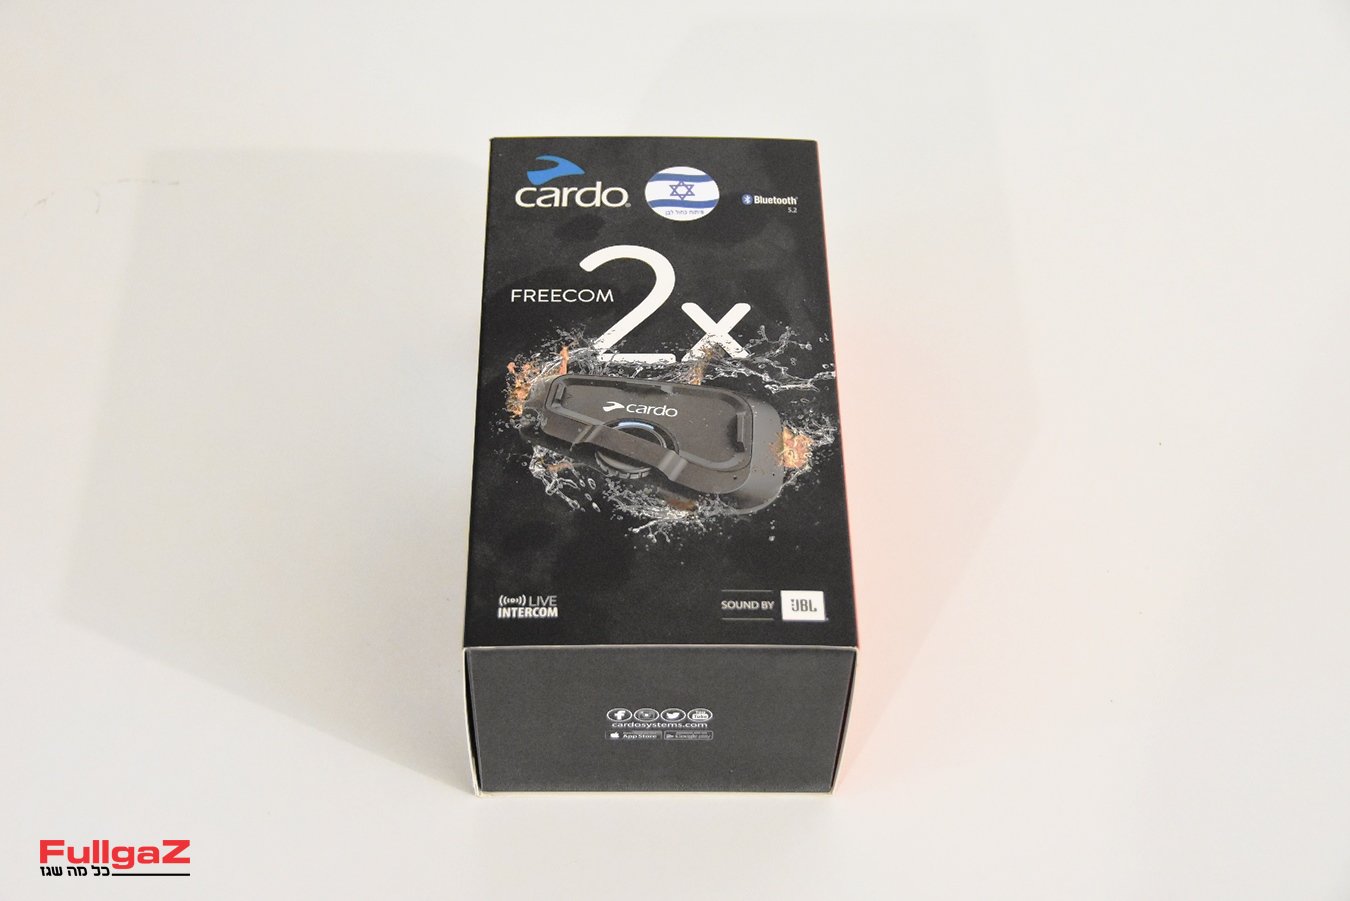 Cardo-Freecom-2x-003